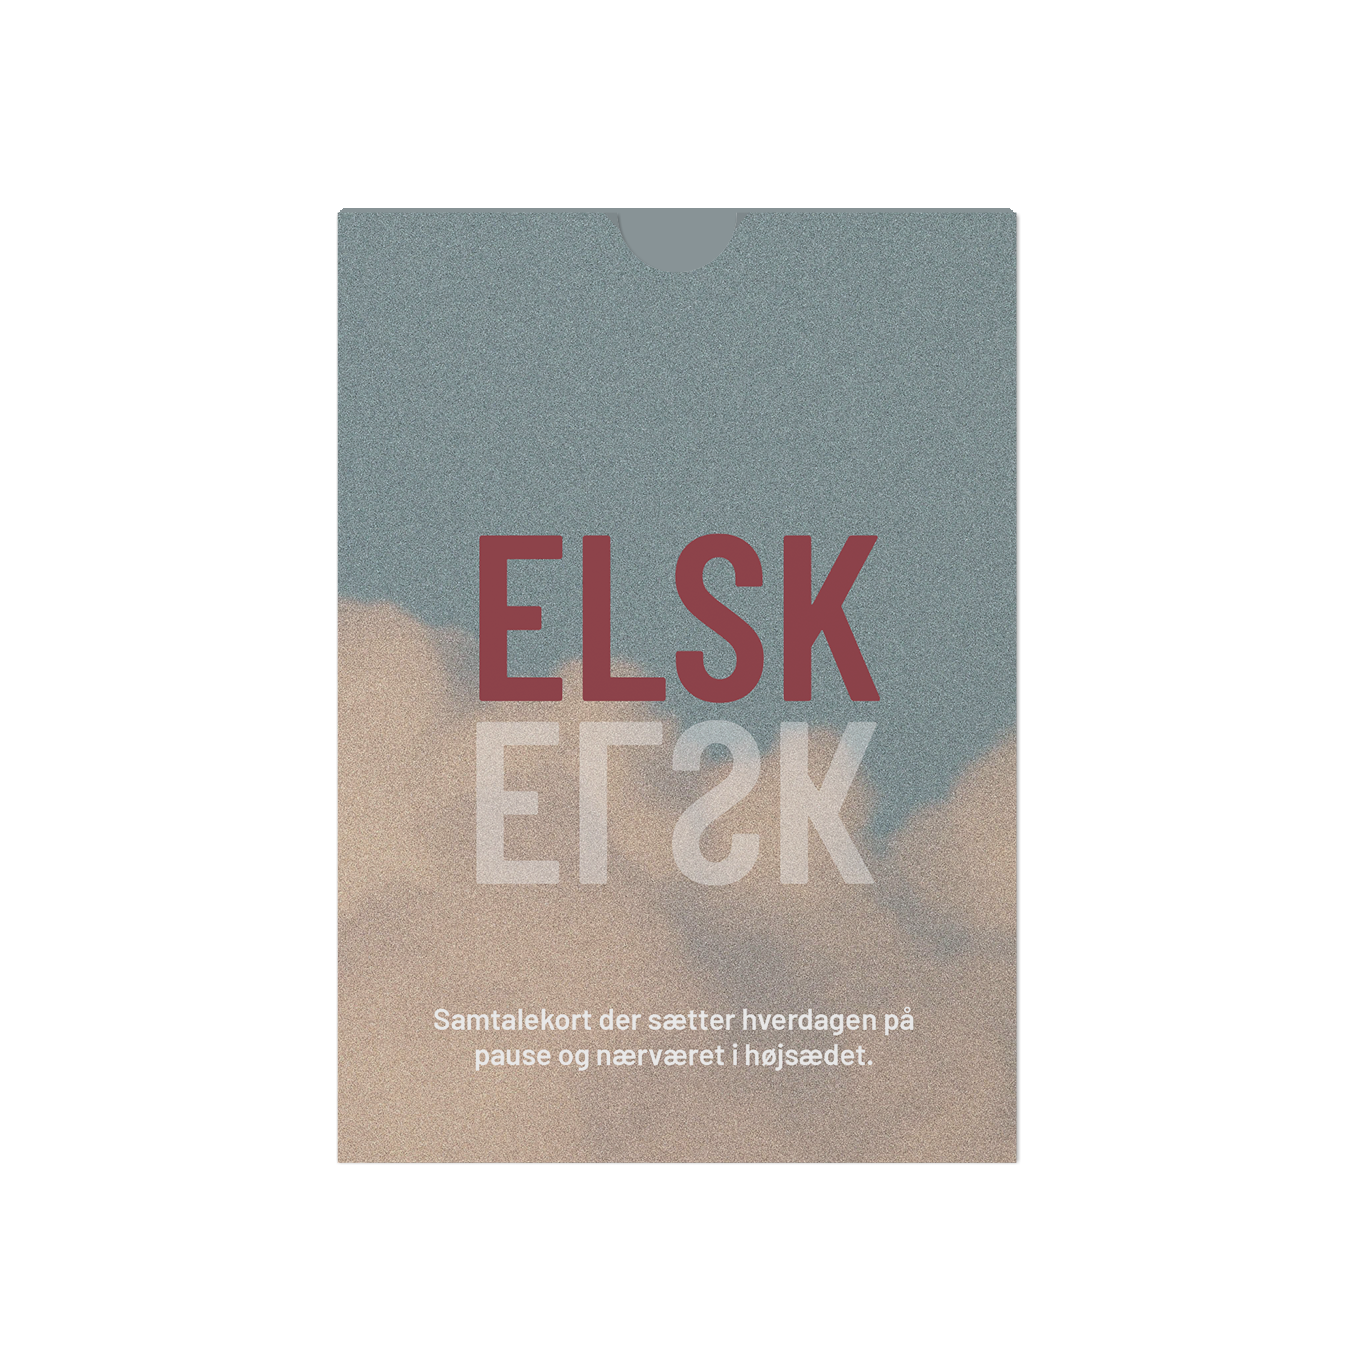 ELSK - samtalekort til parforholdet